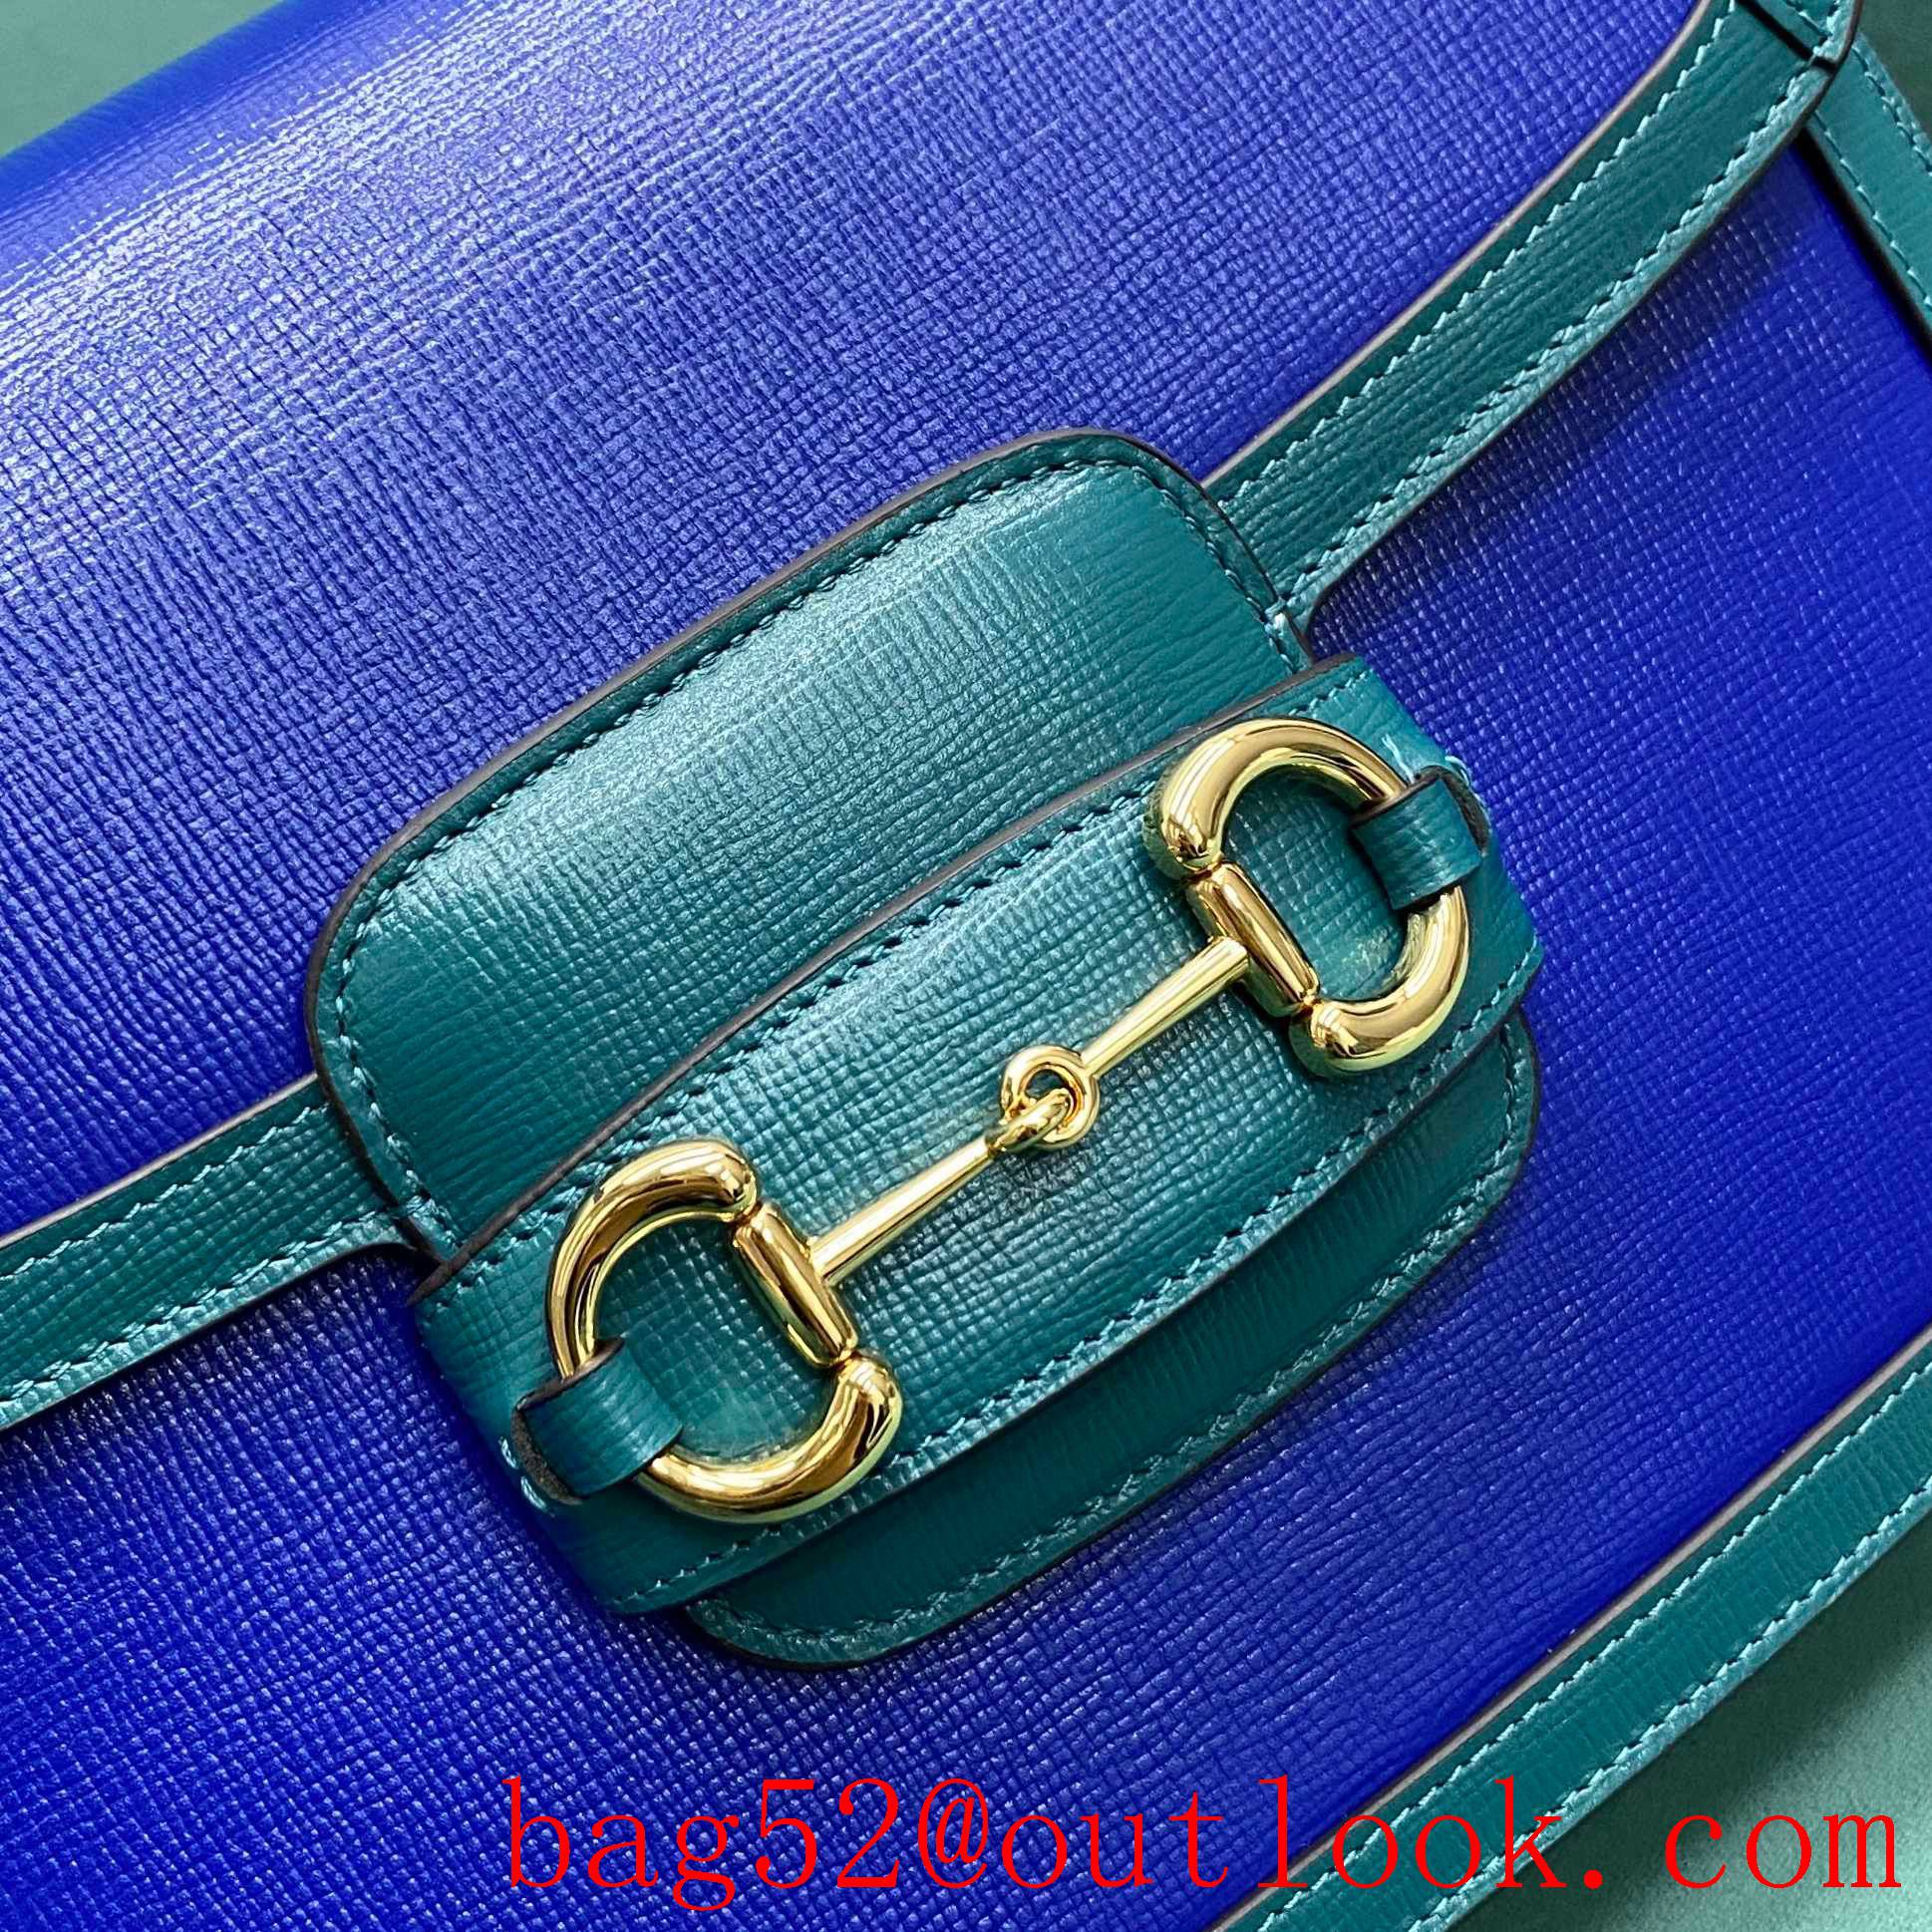 Gucci 1955 Full Leather Saddle royal blue shoulder handbag